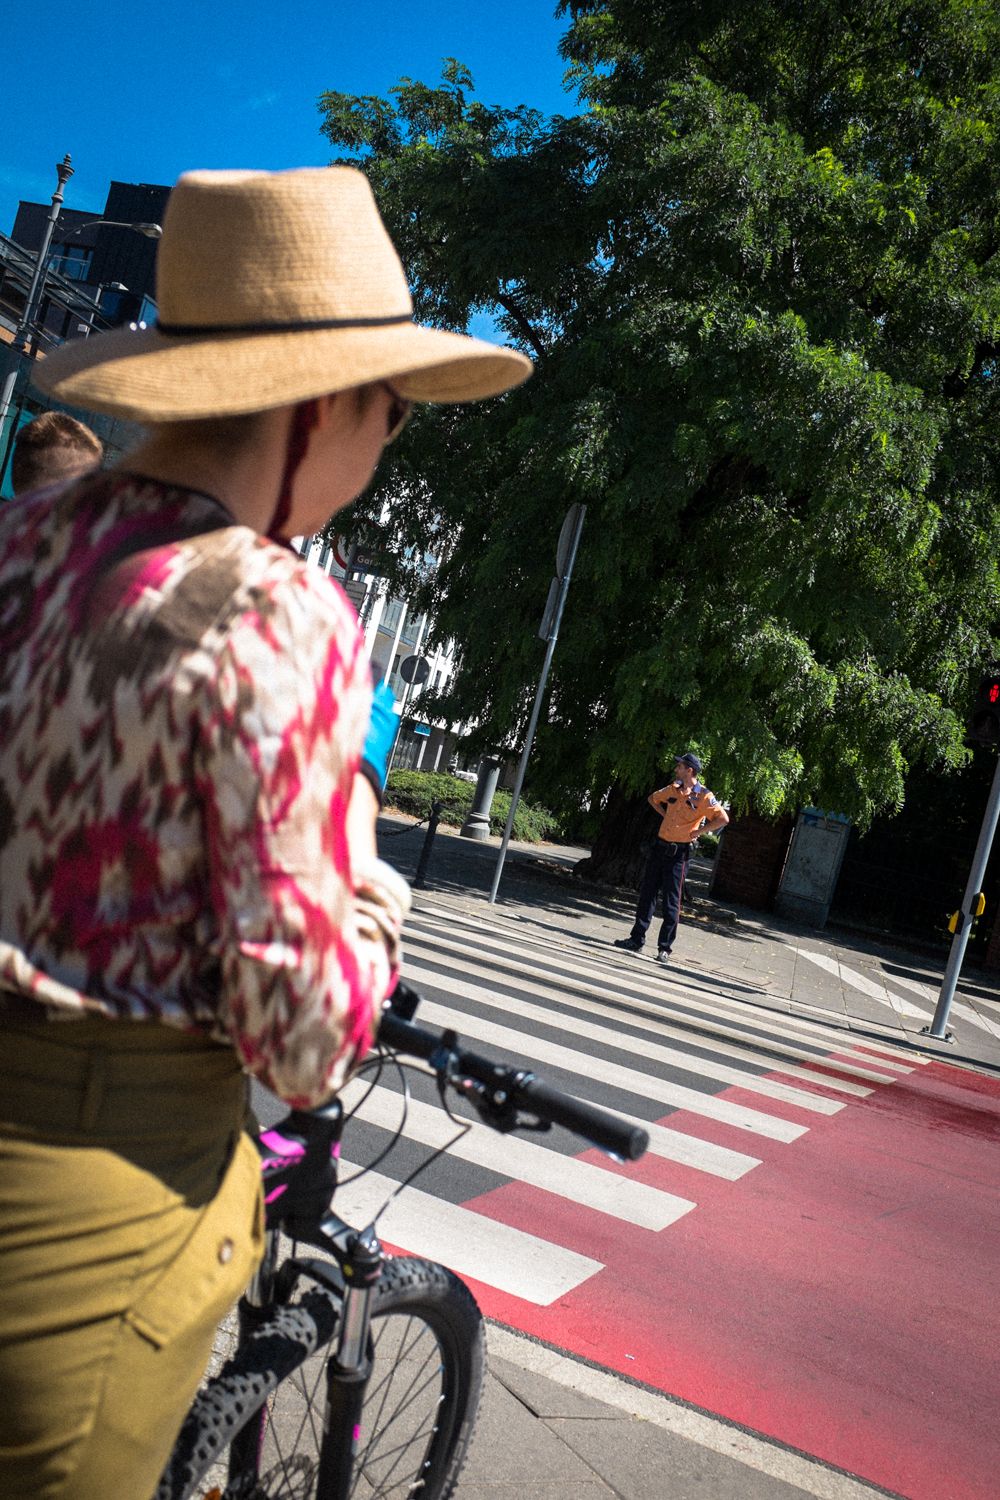 Straßenübergang mit Zebrastreifen in Posen. Im Vordergrund eine Frau mit Hut, auf der anderen Straßenseite wartet ein Mann.